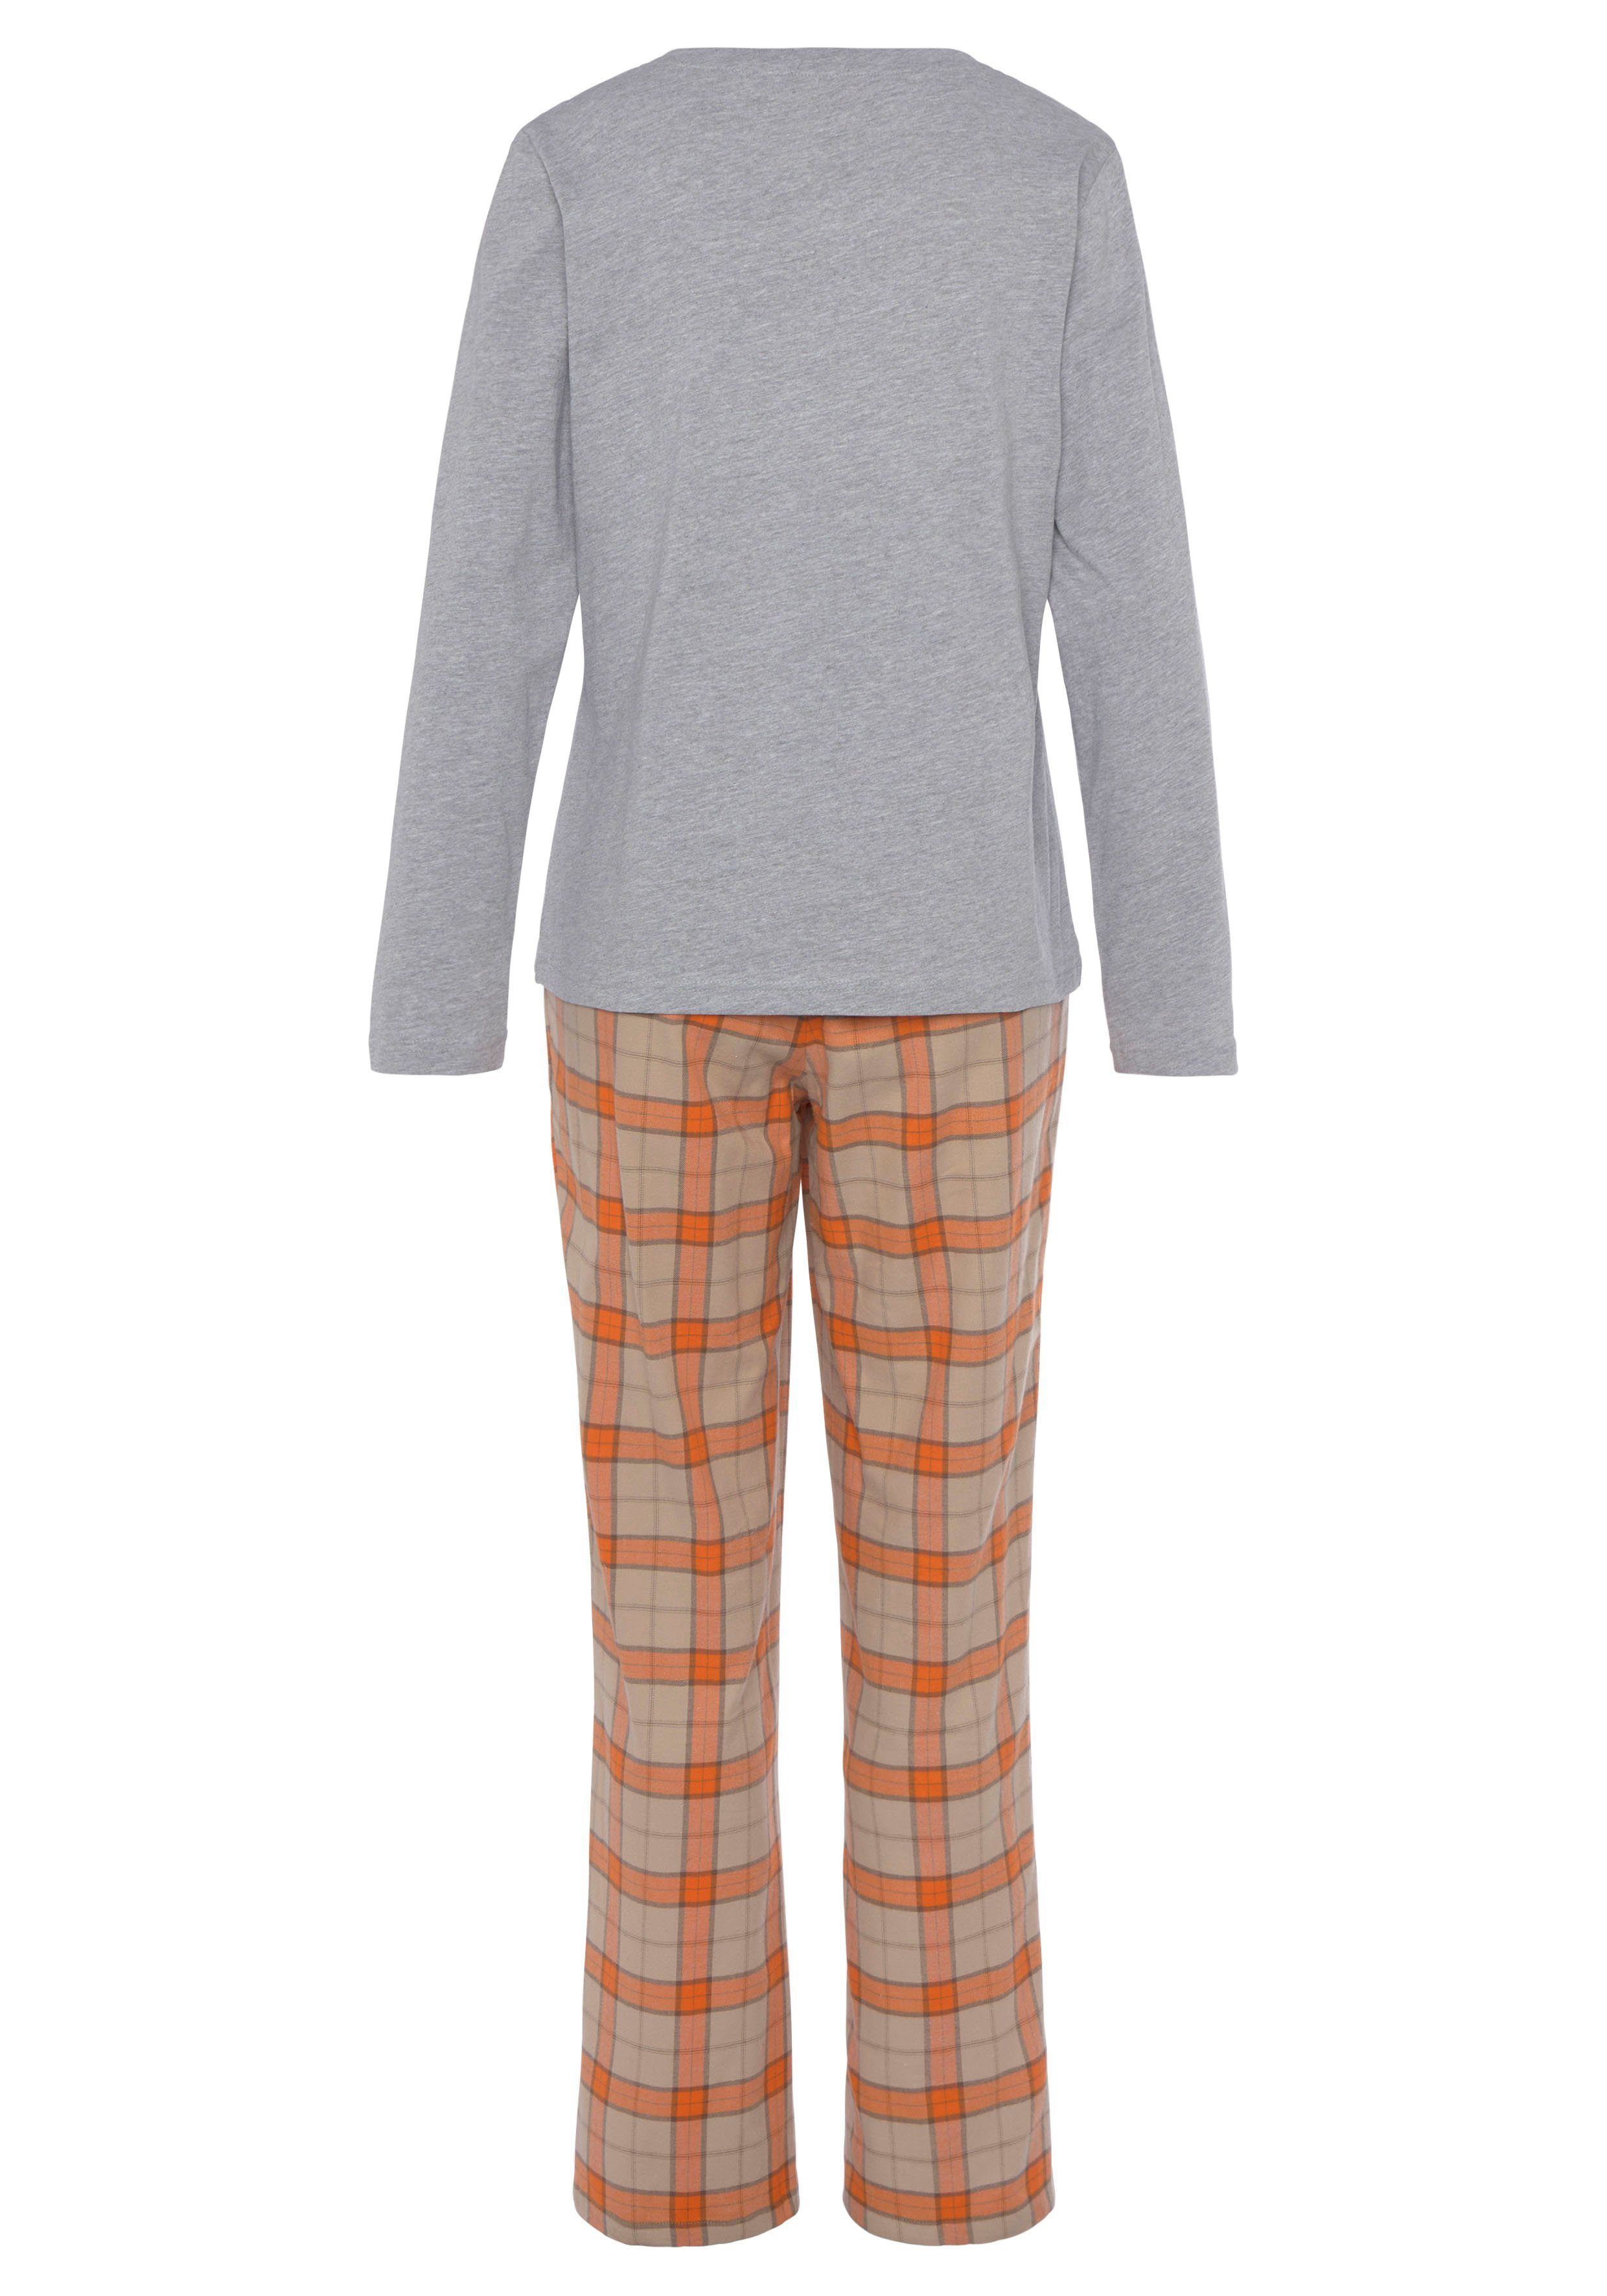 Dreams kuschelig Vivance orange (2 Flanell tlg) aus weichem Pyjama